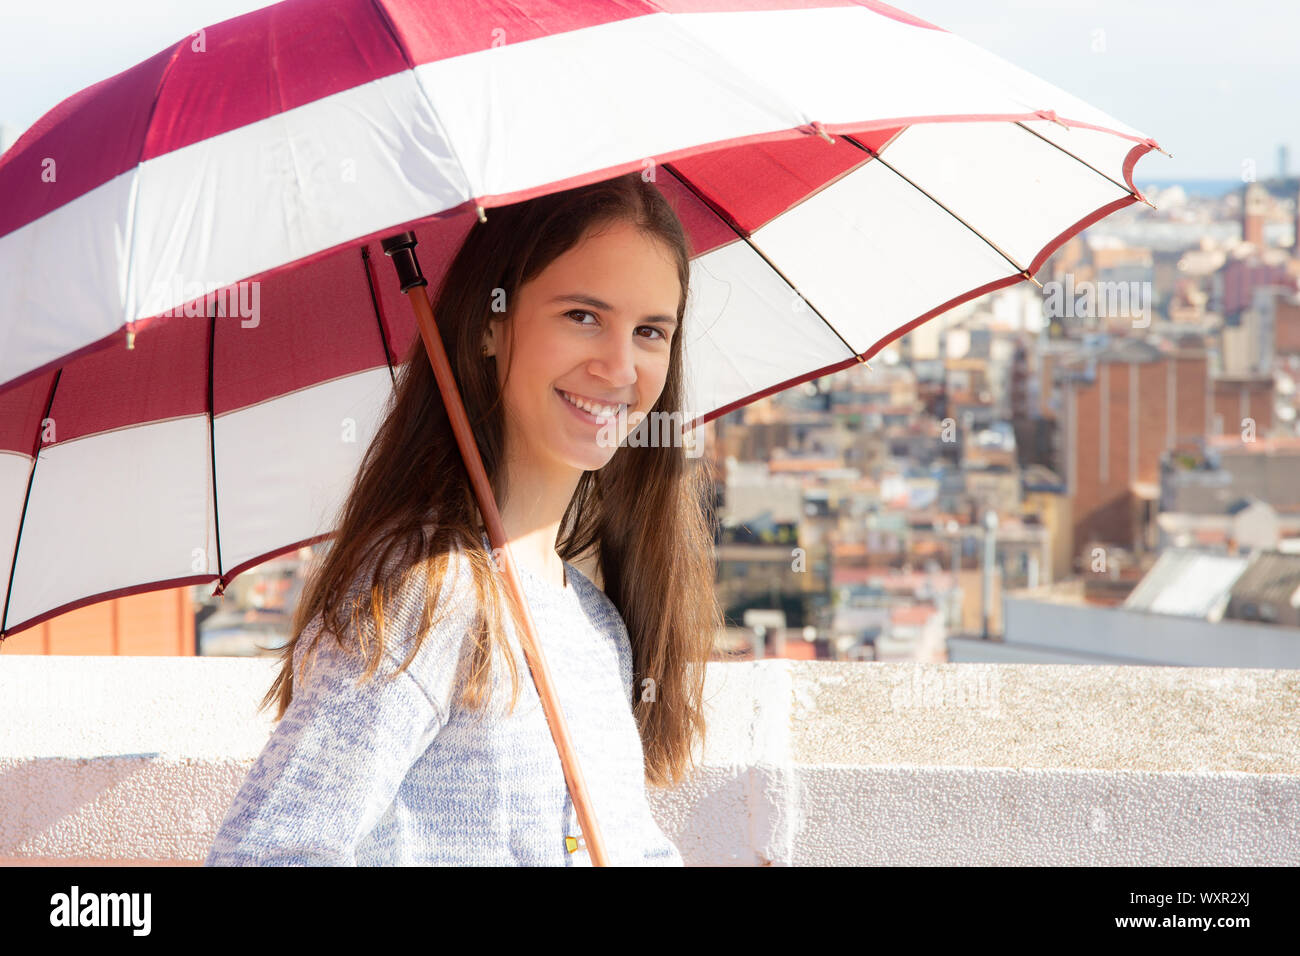 adolescente protegiéndose del sol con una sombrilla en la azotea Stock Photo -